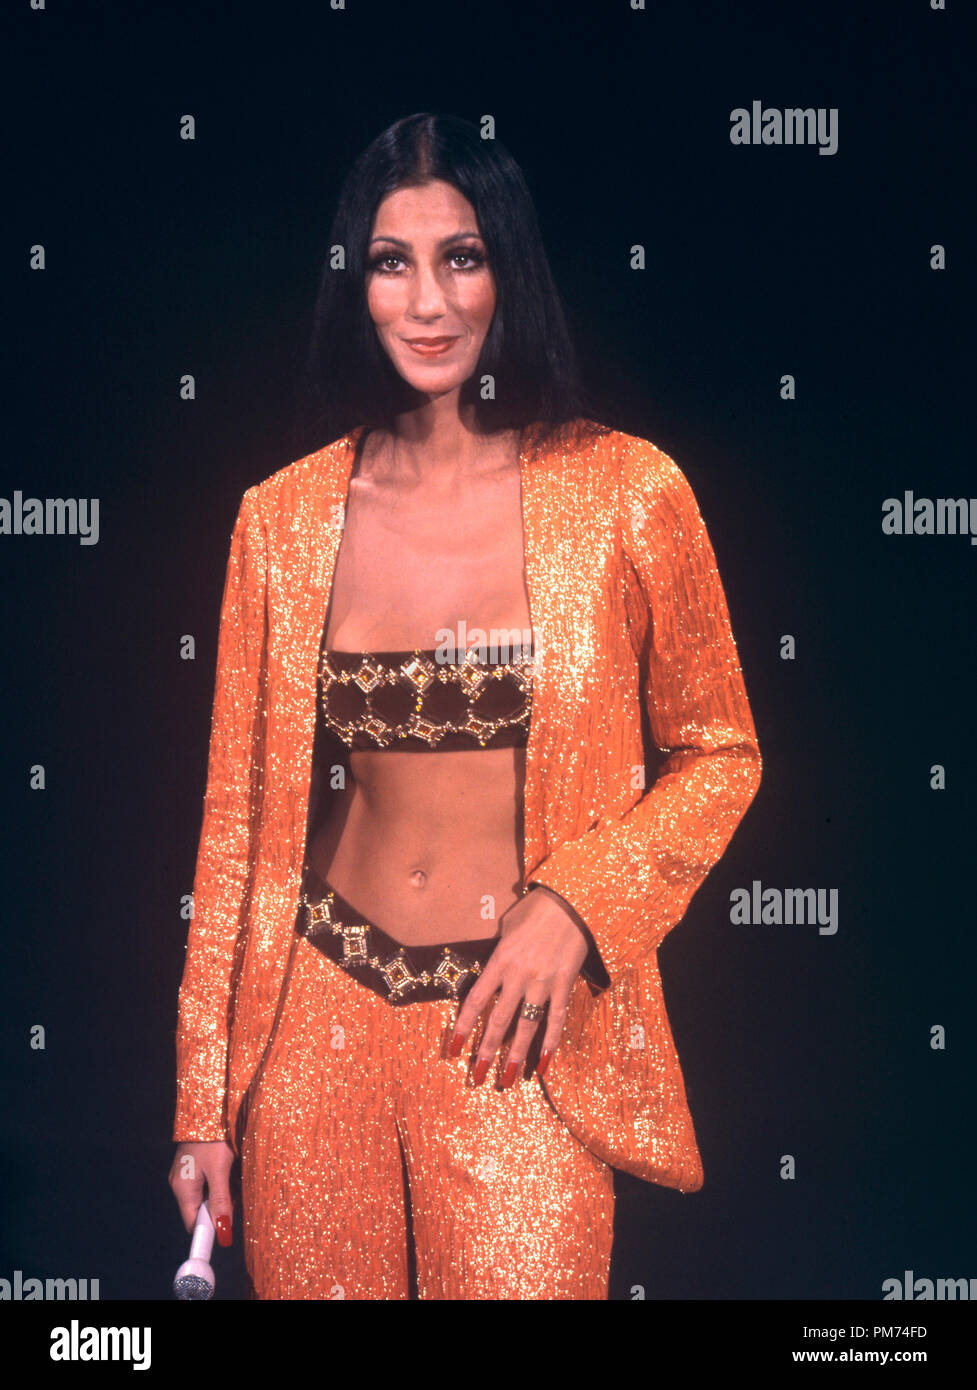 Studio Publicity Still: 'The Sonny and Cher Show'  Cher Bono  circa 1976    File Reference # 30928 1136THA Stock Photo